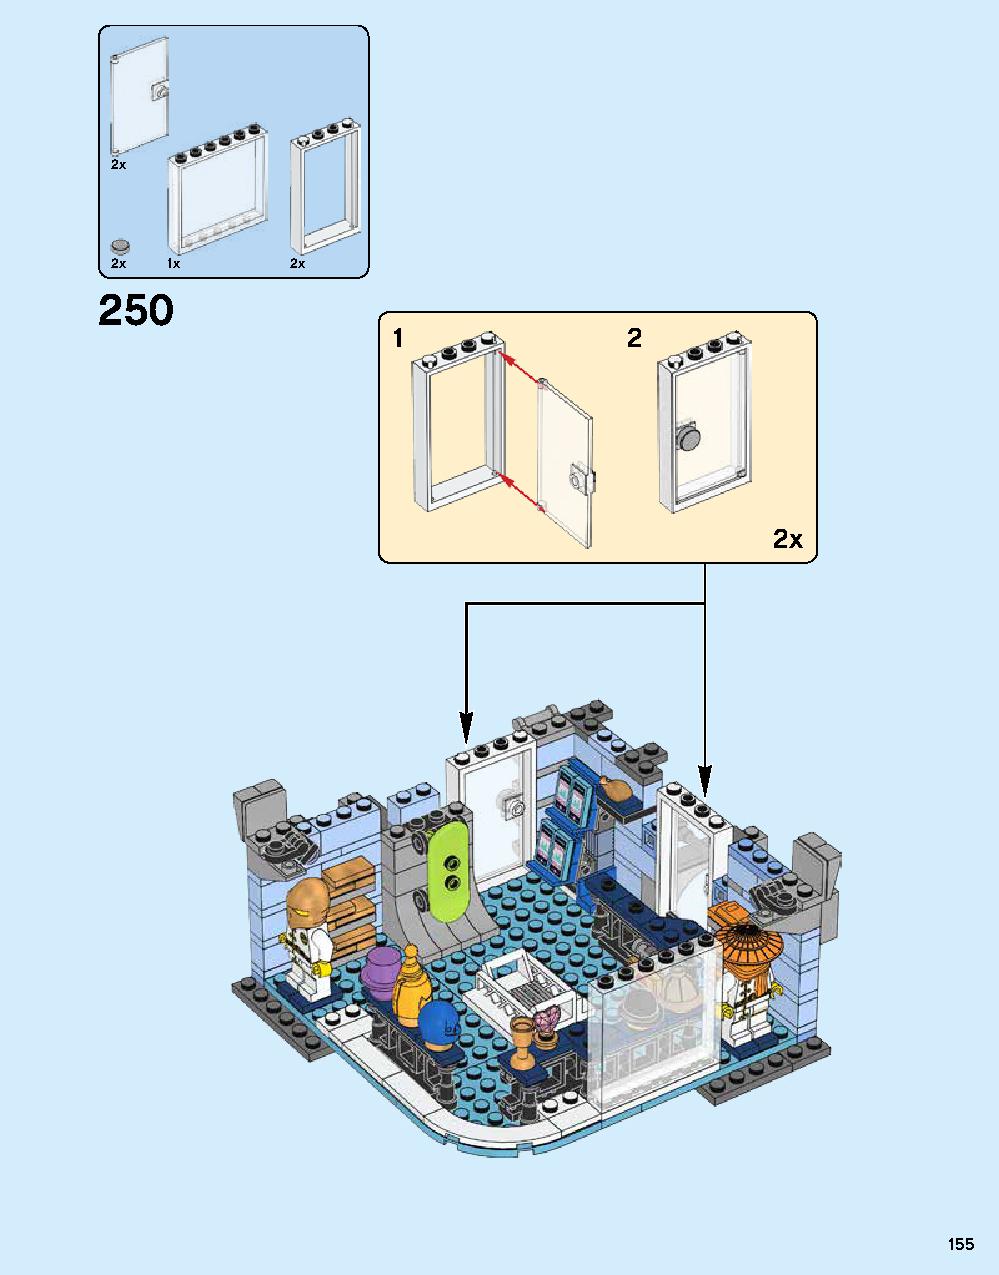 ニンジャゴー シティ 70620 レゴの商品情報 レゴの説明書・組立方法 155 page